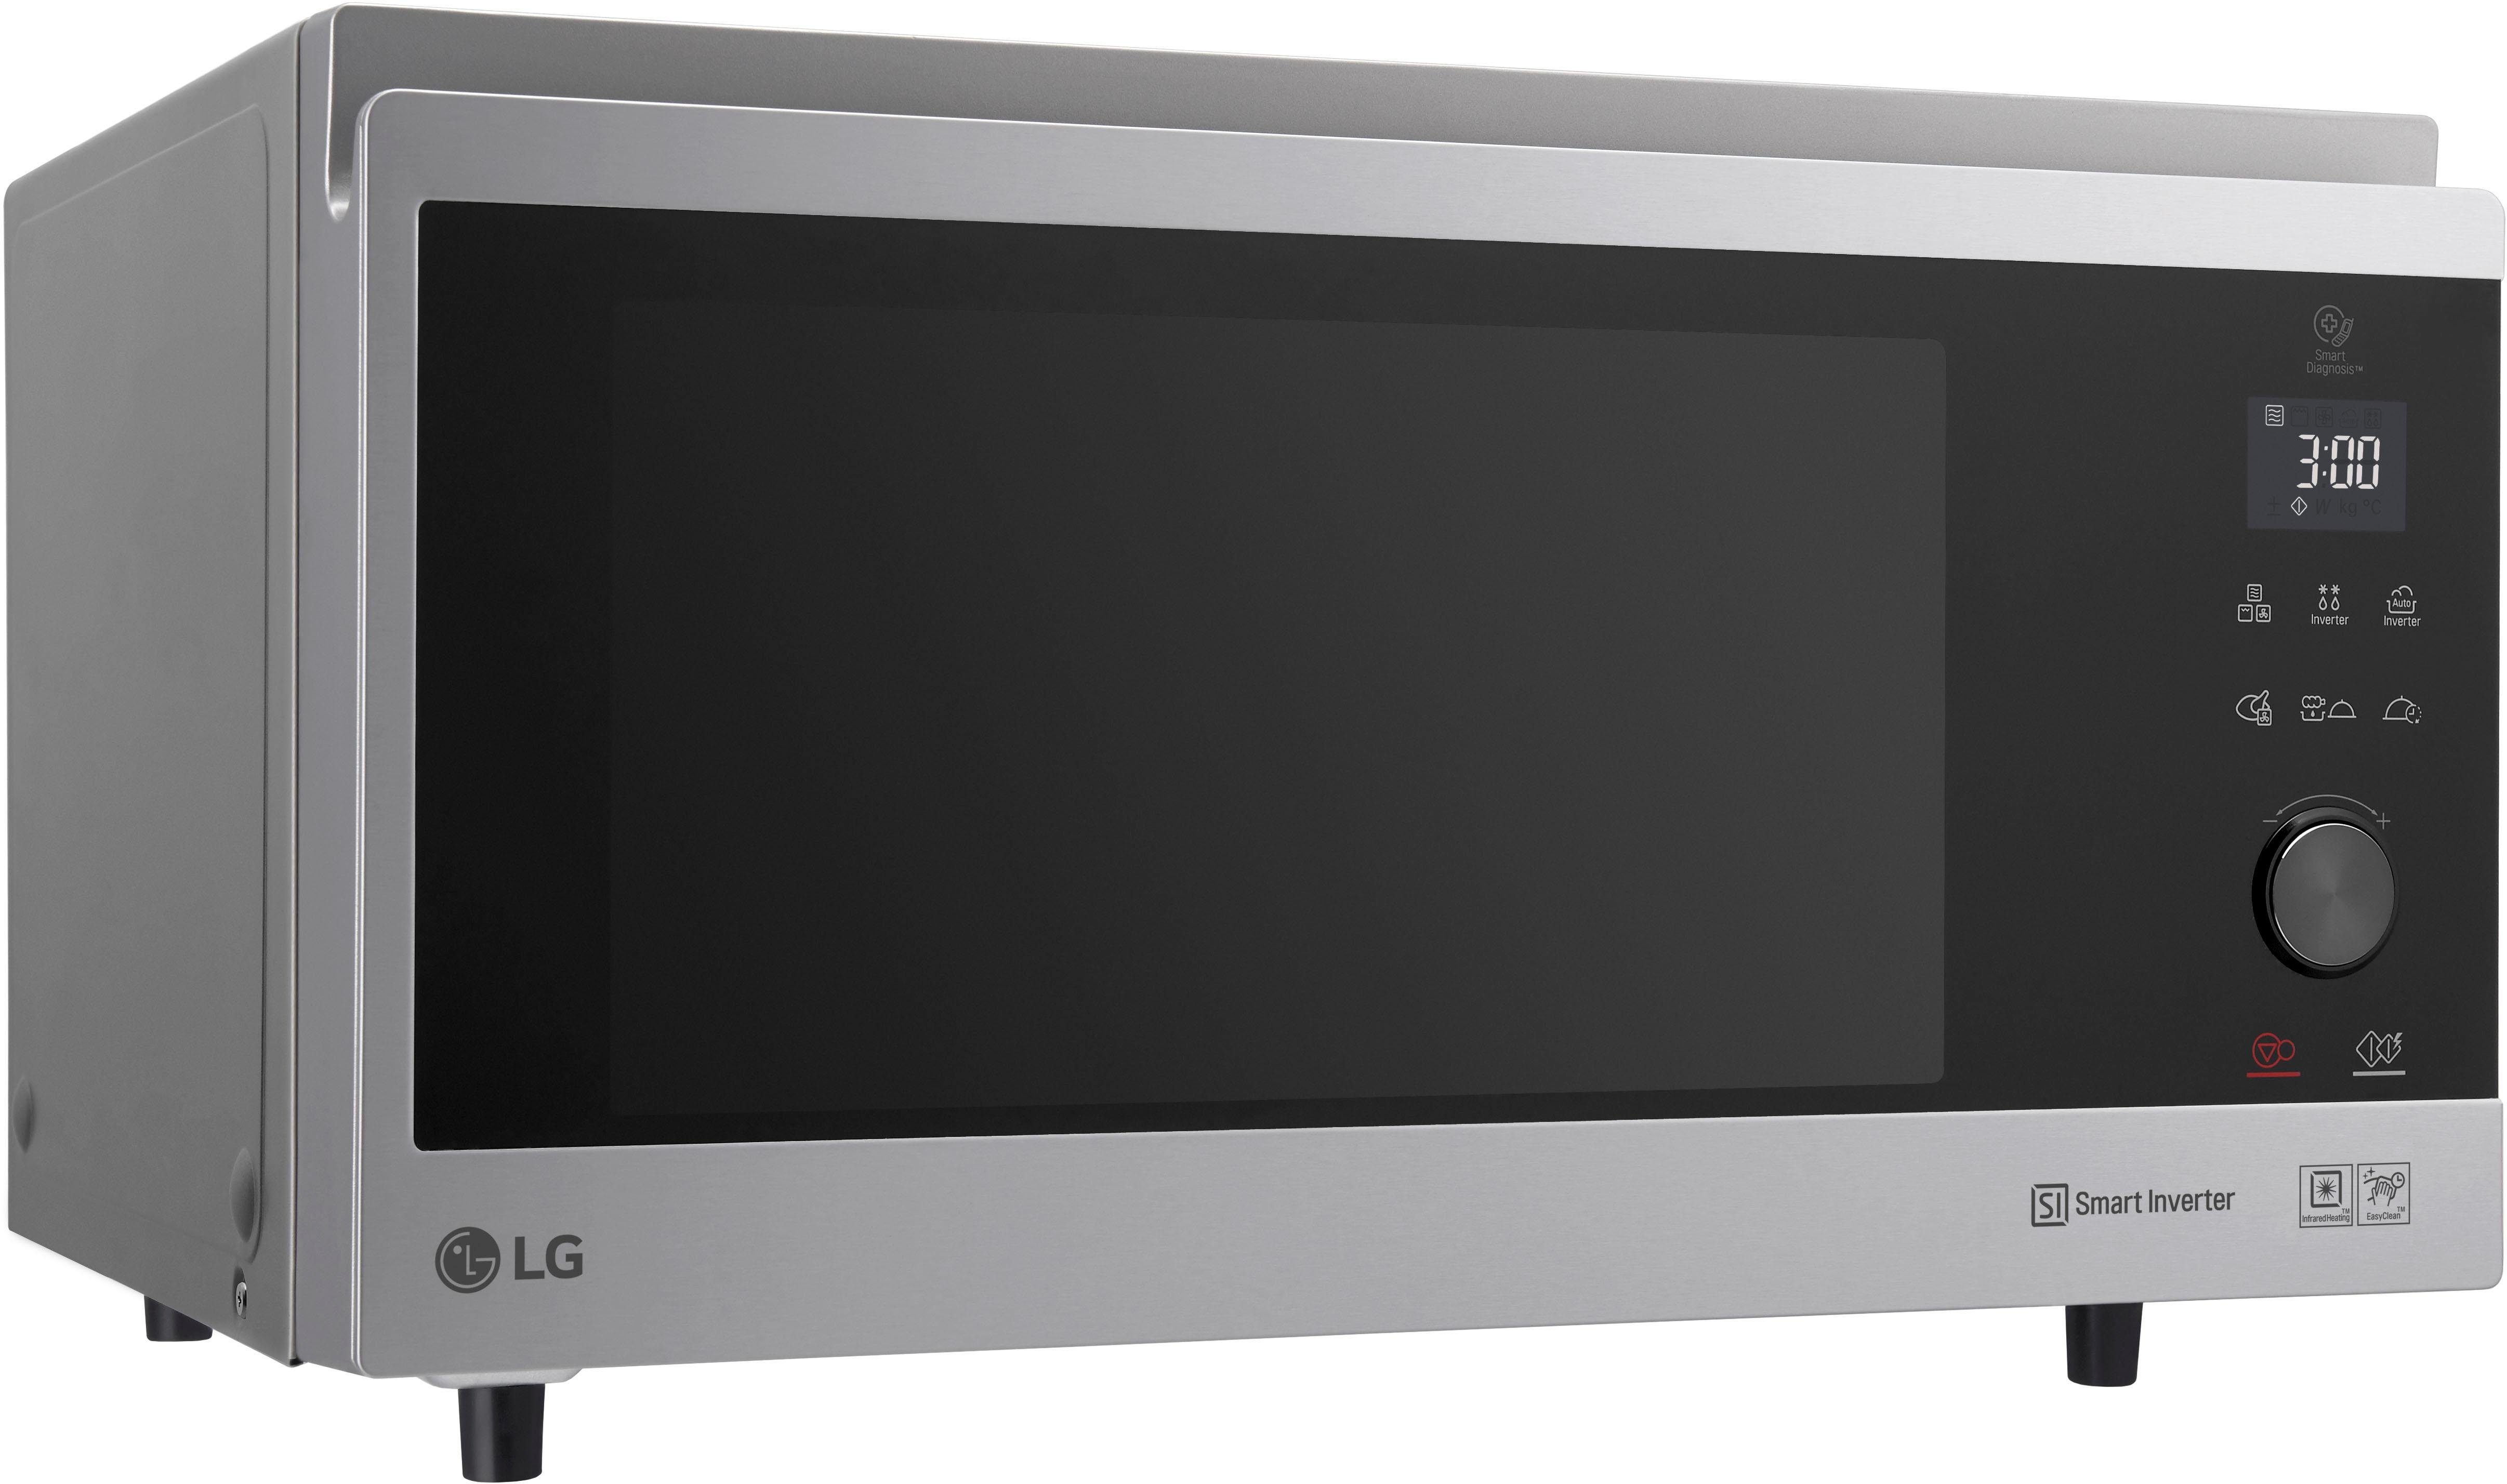 LG Mikrowelle MJ 3965 ACS, l, Hybrid-Heißluftofen Mikrowelle, 1100 Grill, 39 4-in-1 Heißluft, Watt